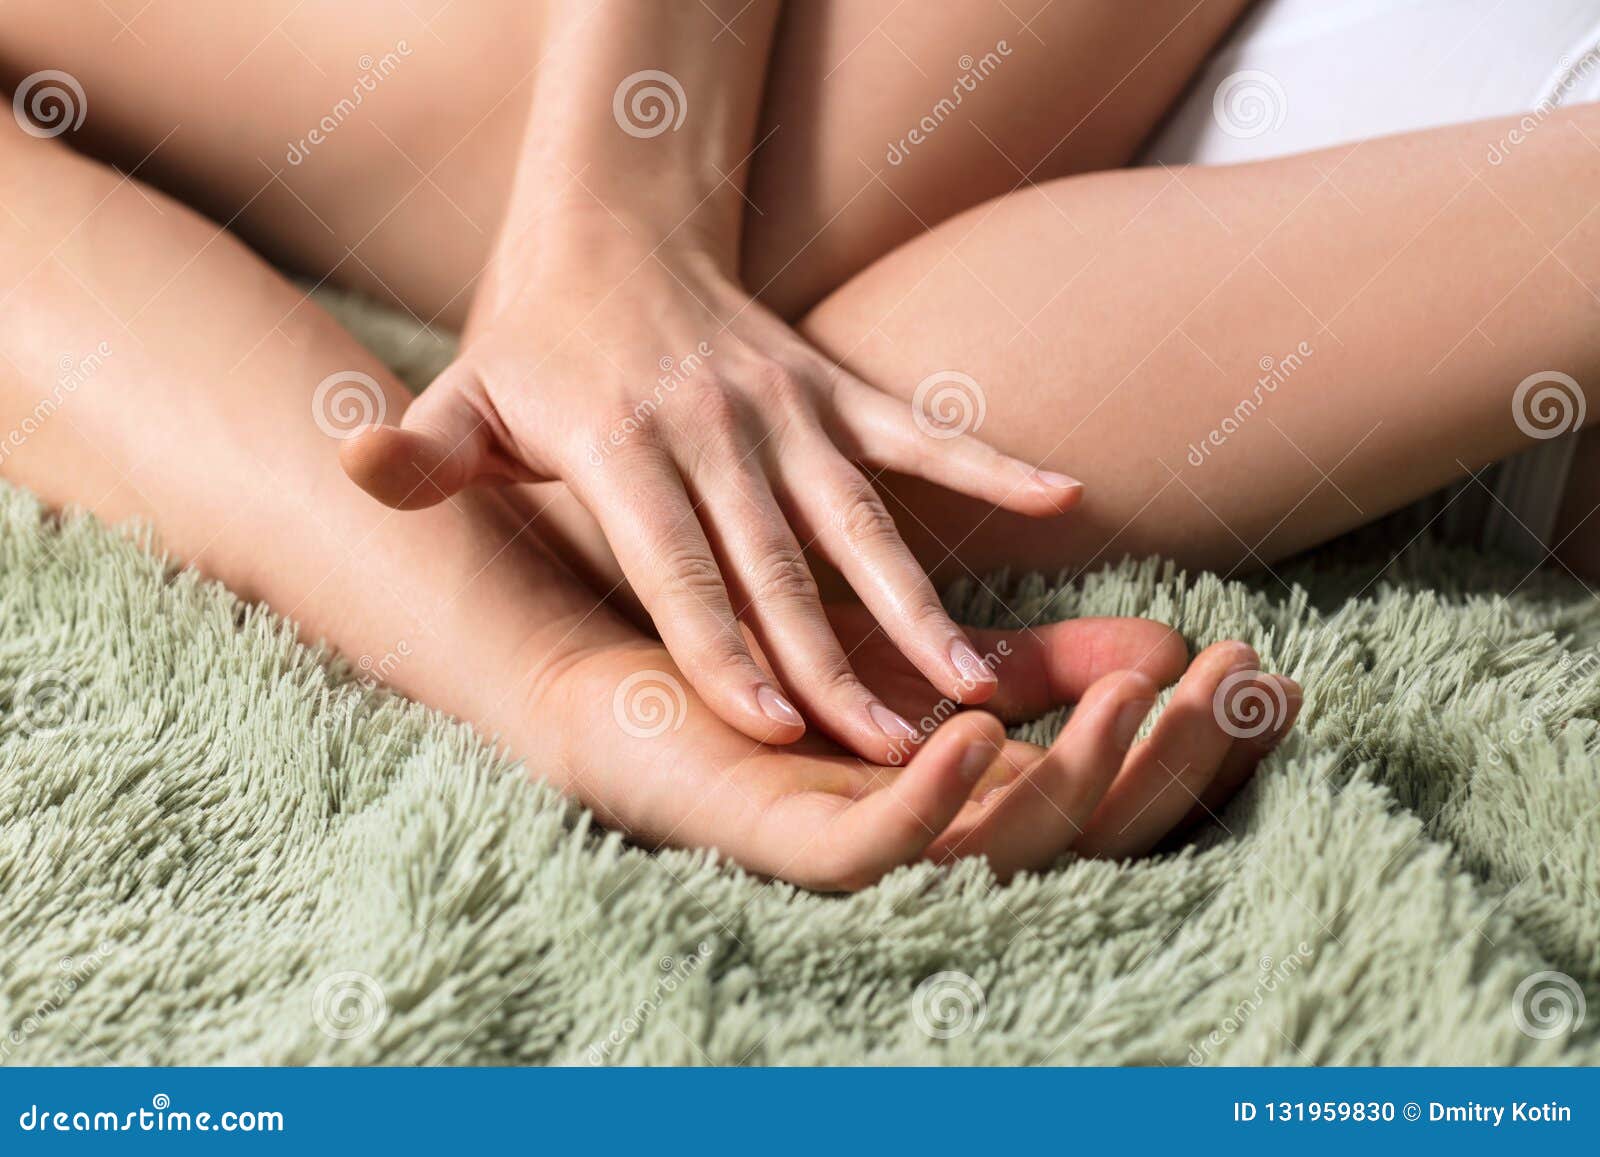 Was sind erotische massagen